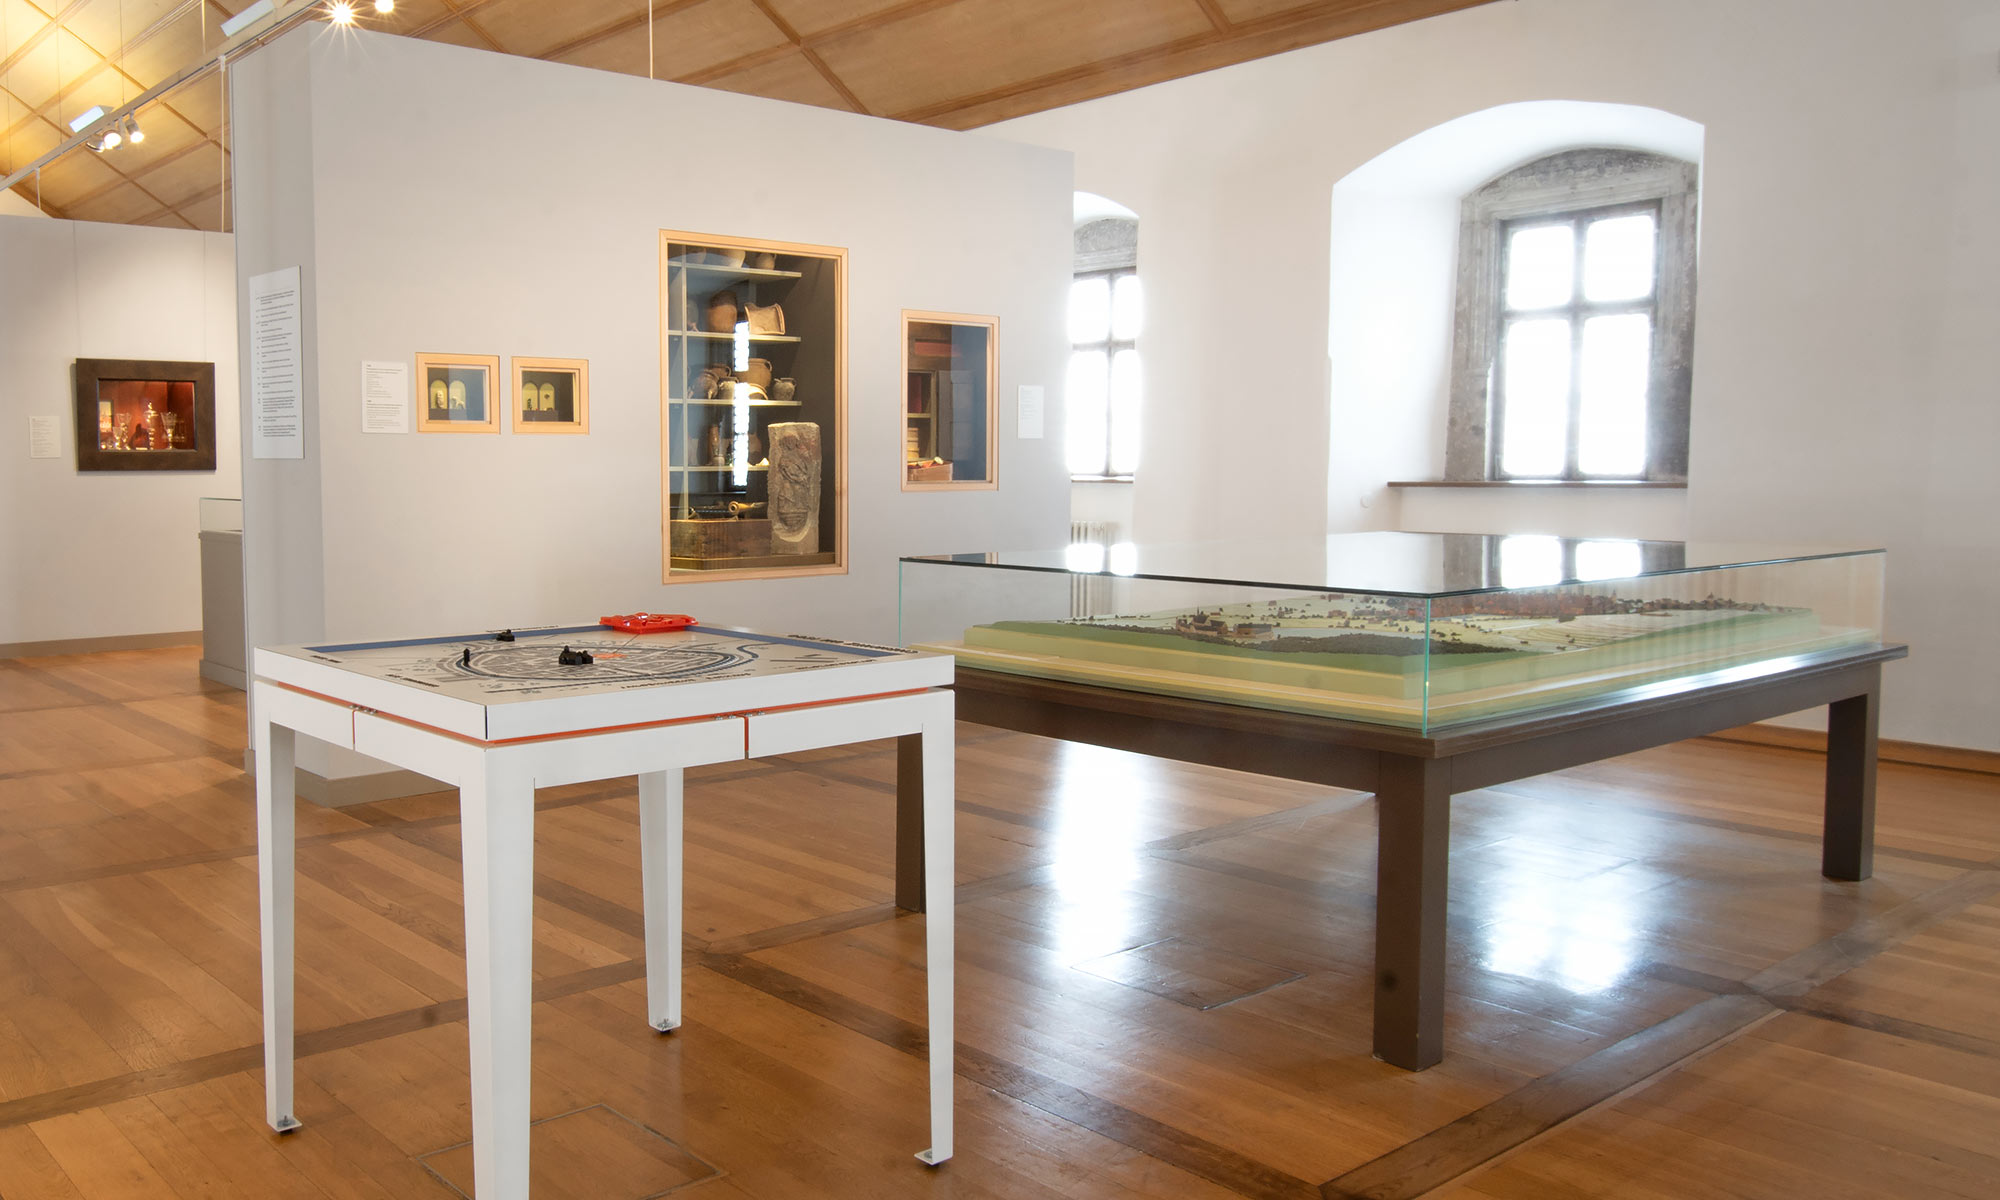 Blick in einen Ausstellungsraum, in dem eines der Tastmodelle und ein älteres Modell unter Glas nebeneinander stehen. Im Hintergrund weitere Ausstellungsstücke.